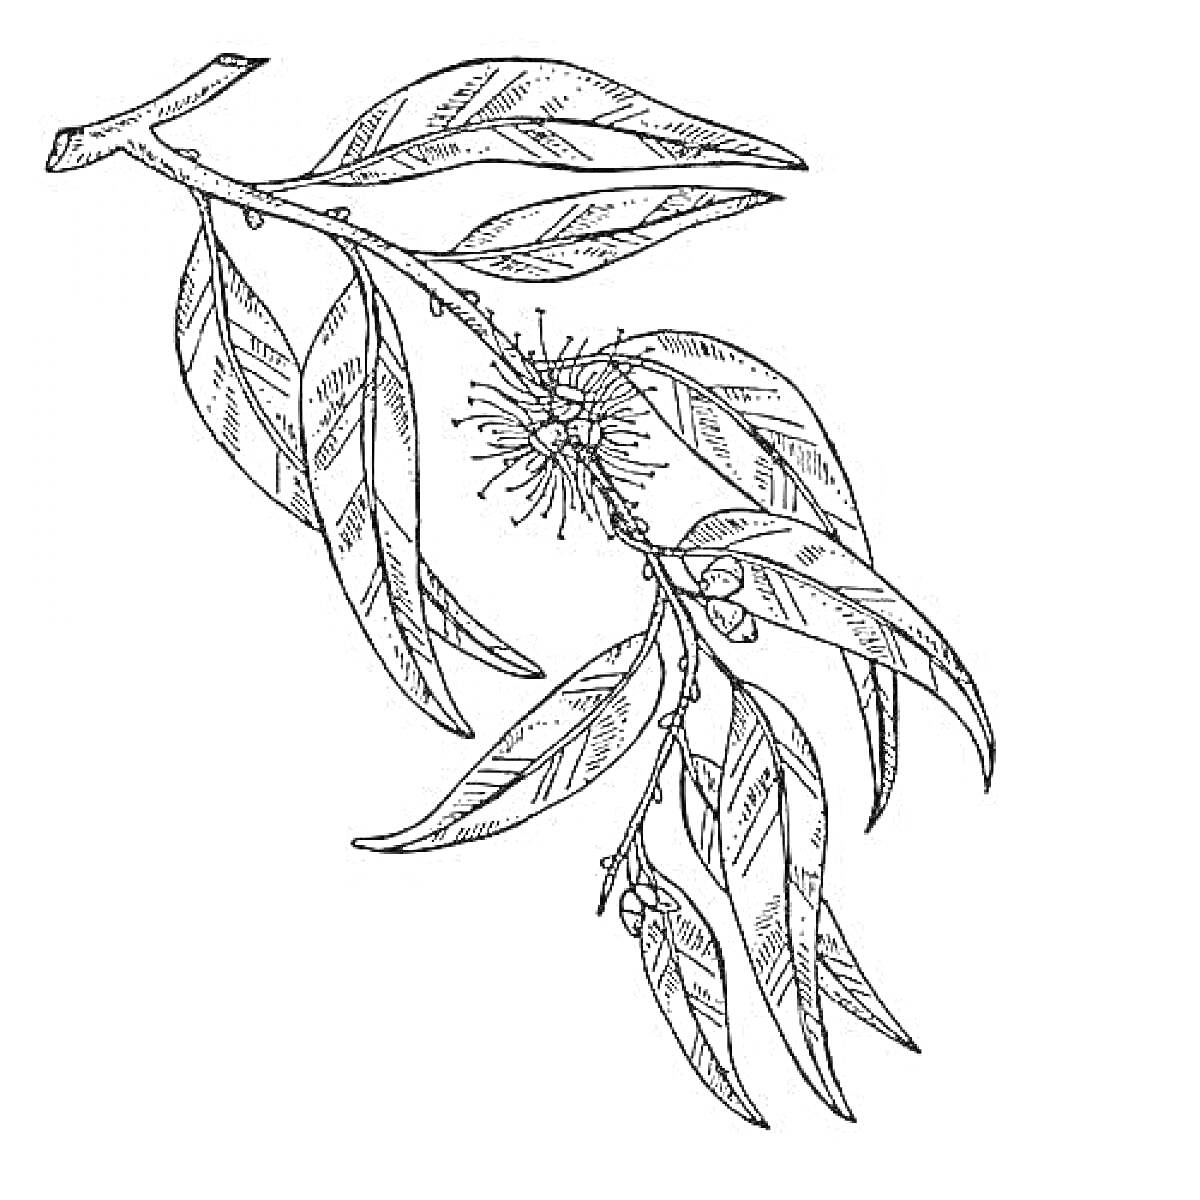 РаскраскаВетвь эвкалипта с листьями, цветами и плодами